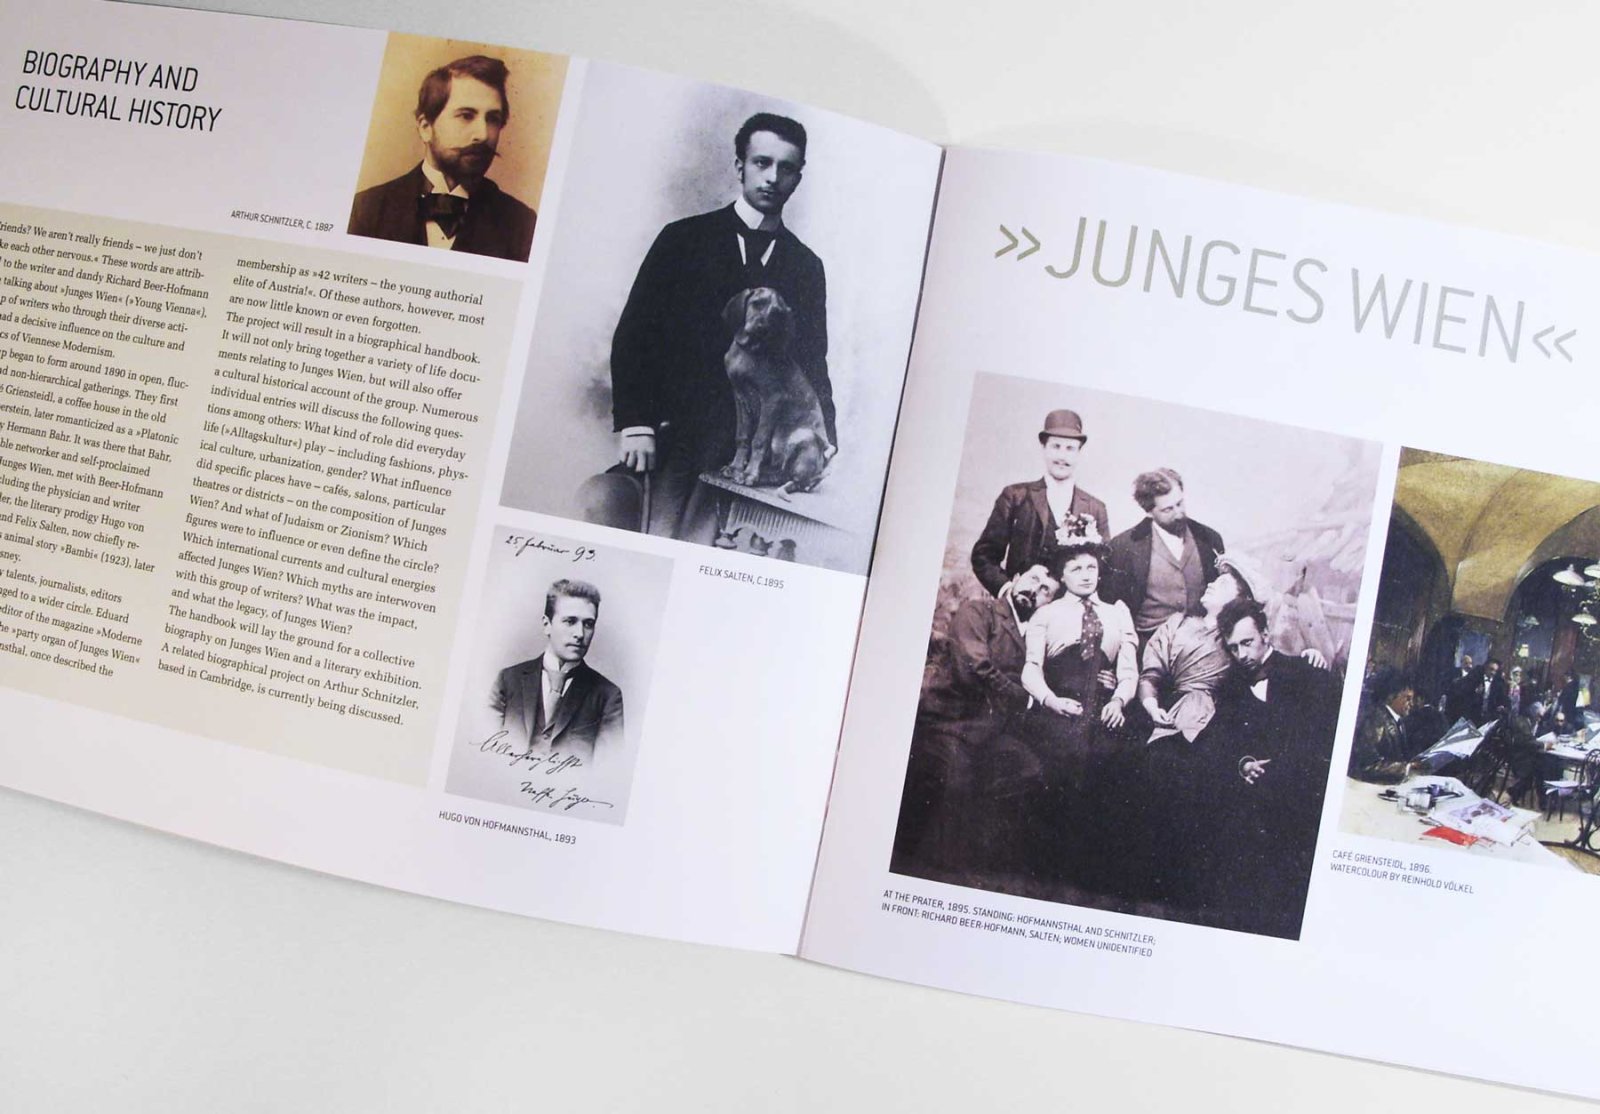 Innenseite Junges Wien für die Broschüre des Ludwig Boltzmann Instituts History and Theory of Biography